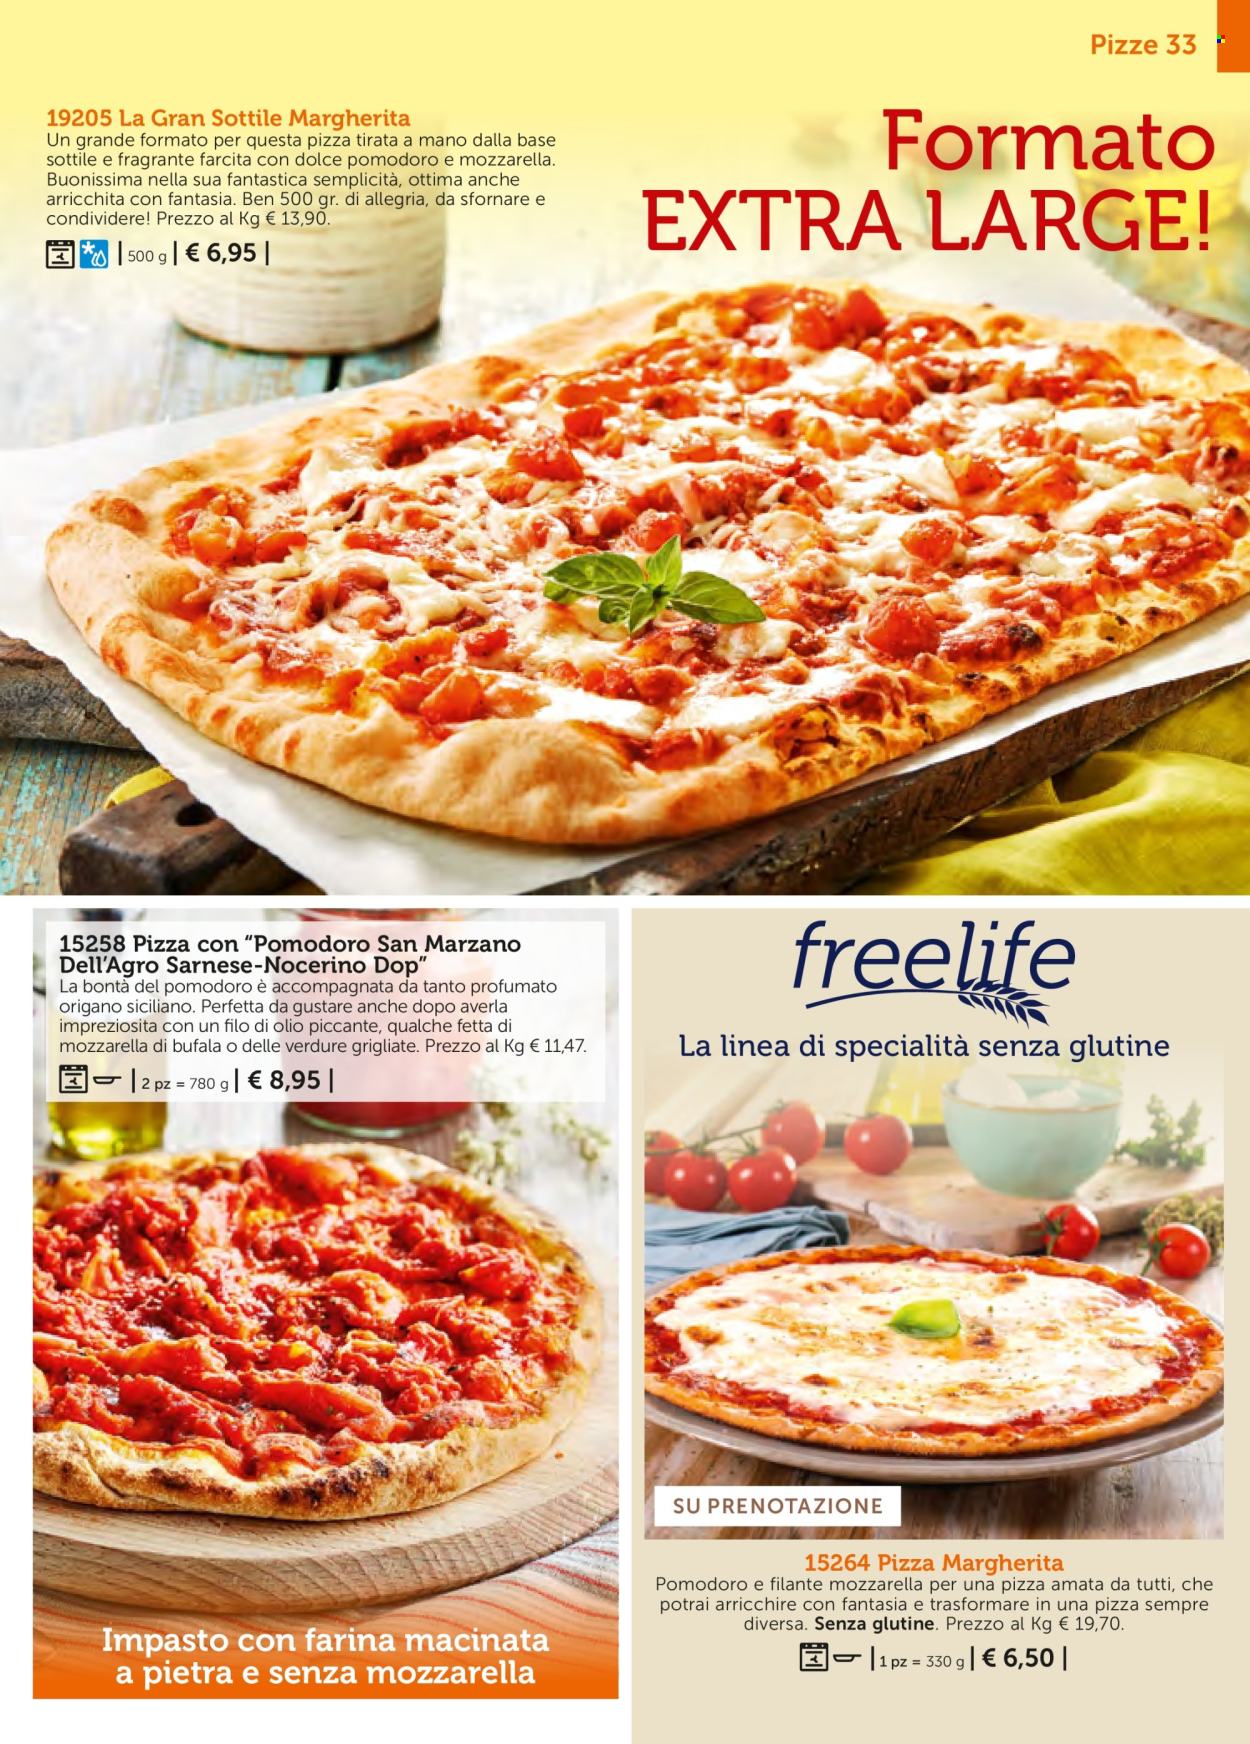 thumbnail - Volantino Bofrost - Prodotti in offerta - mozzarella di bufala, pizza, pizza Margherita, dolce. Pagina 33.